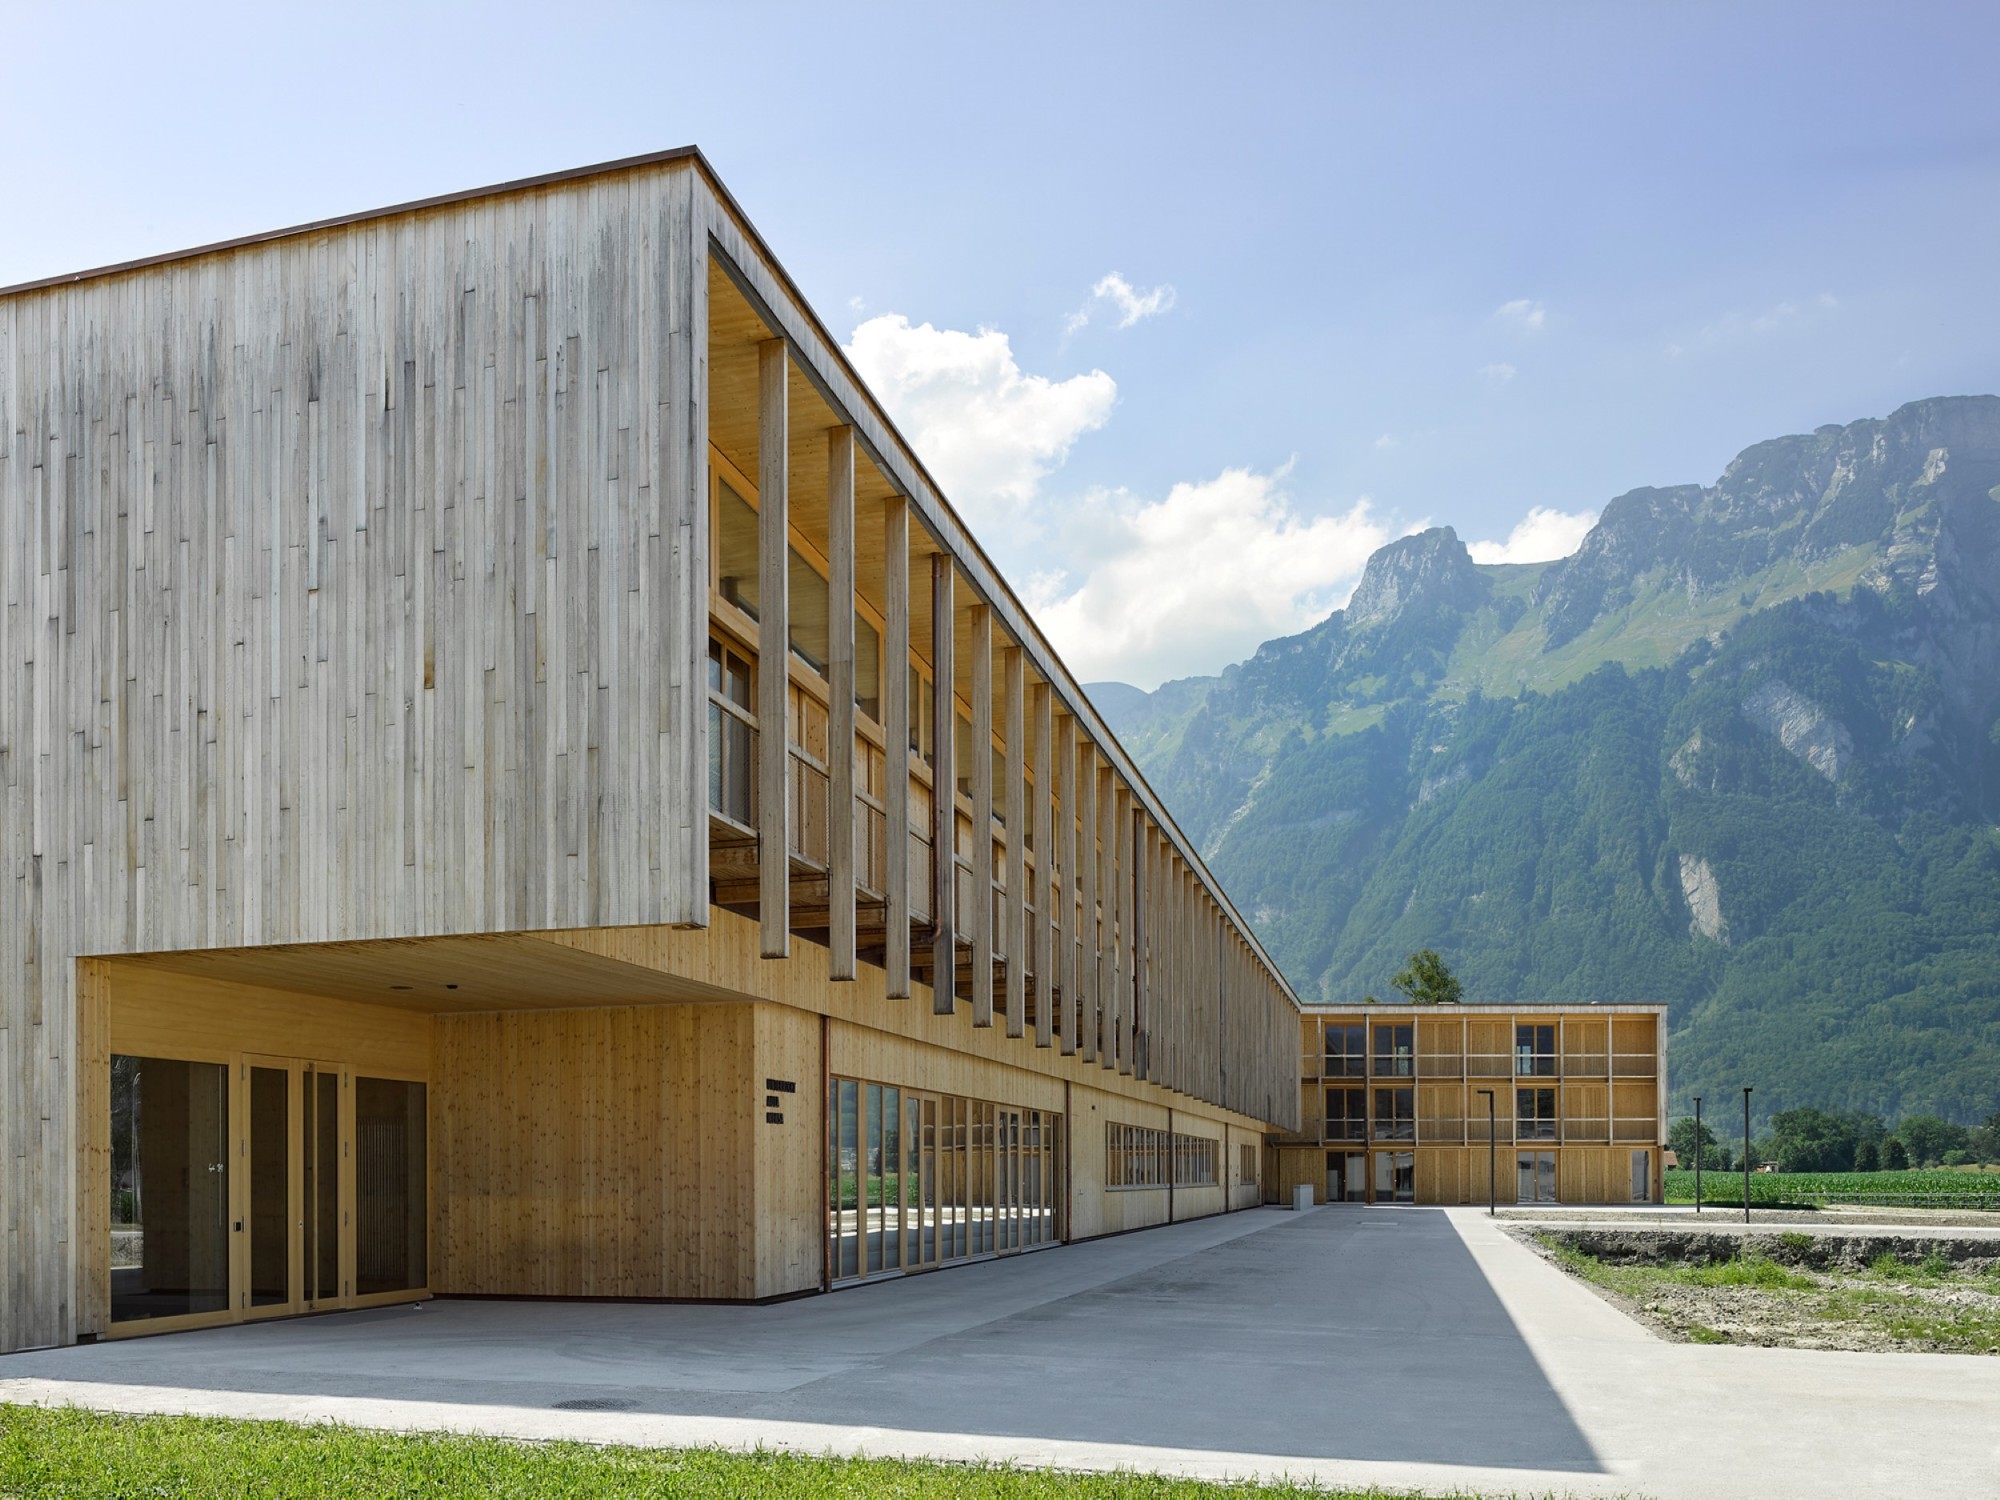 Le prix « Constructives Alps » est décerné à des bâtiments neufs et rénovés, particulièrement durables. Il s’adresse aux architectes et aux maîtres d’ouvrage qui ont appliqués dans leur objet les critères écologiques et économiques, mais aussi sociaux et 